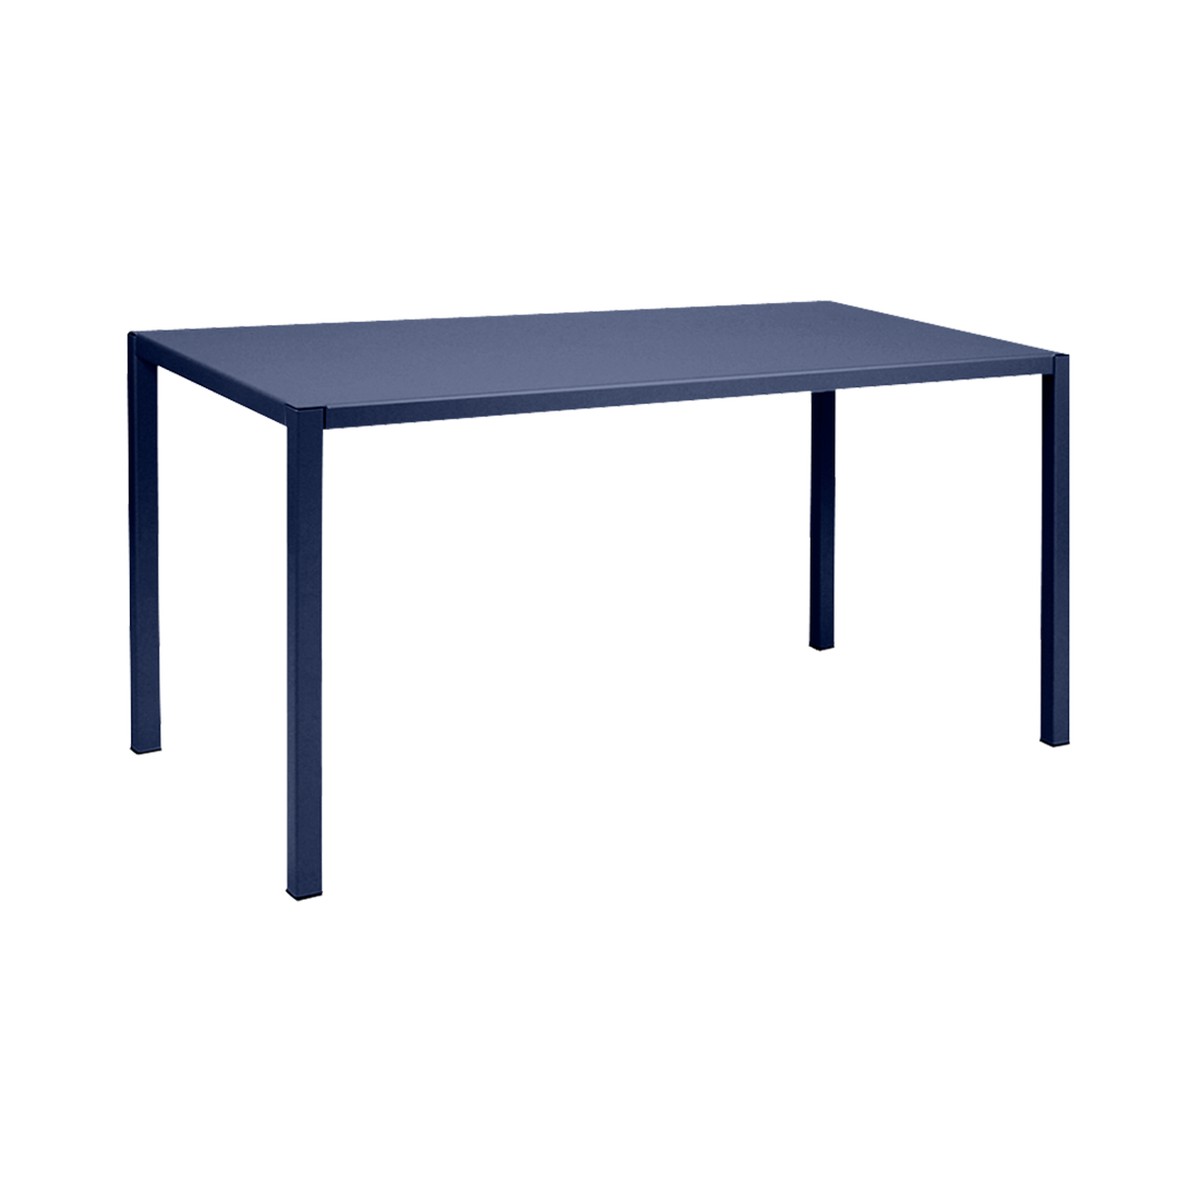 Fermob Inside Out Table Inside Out rectangulaire Bleu aigue-marine L 140 x l 70 x H74cm